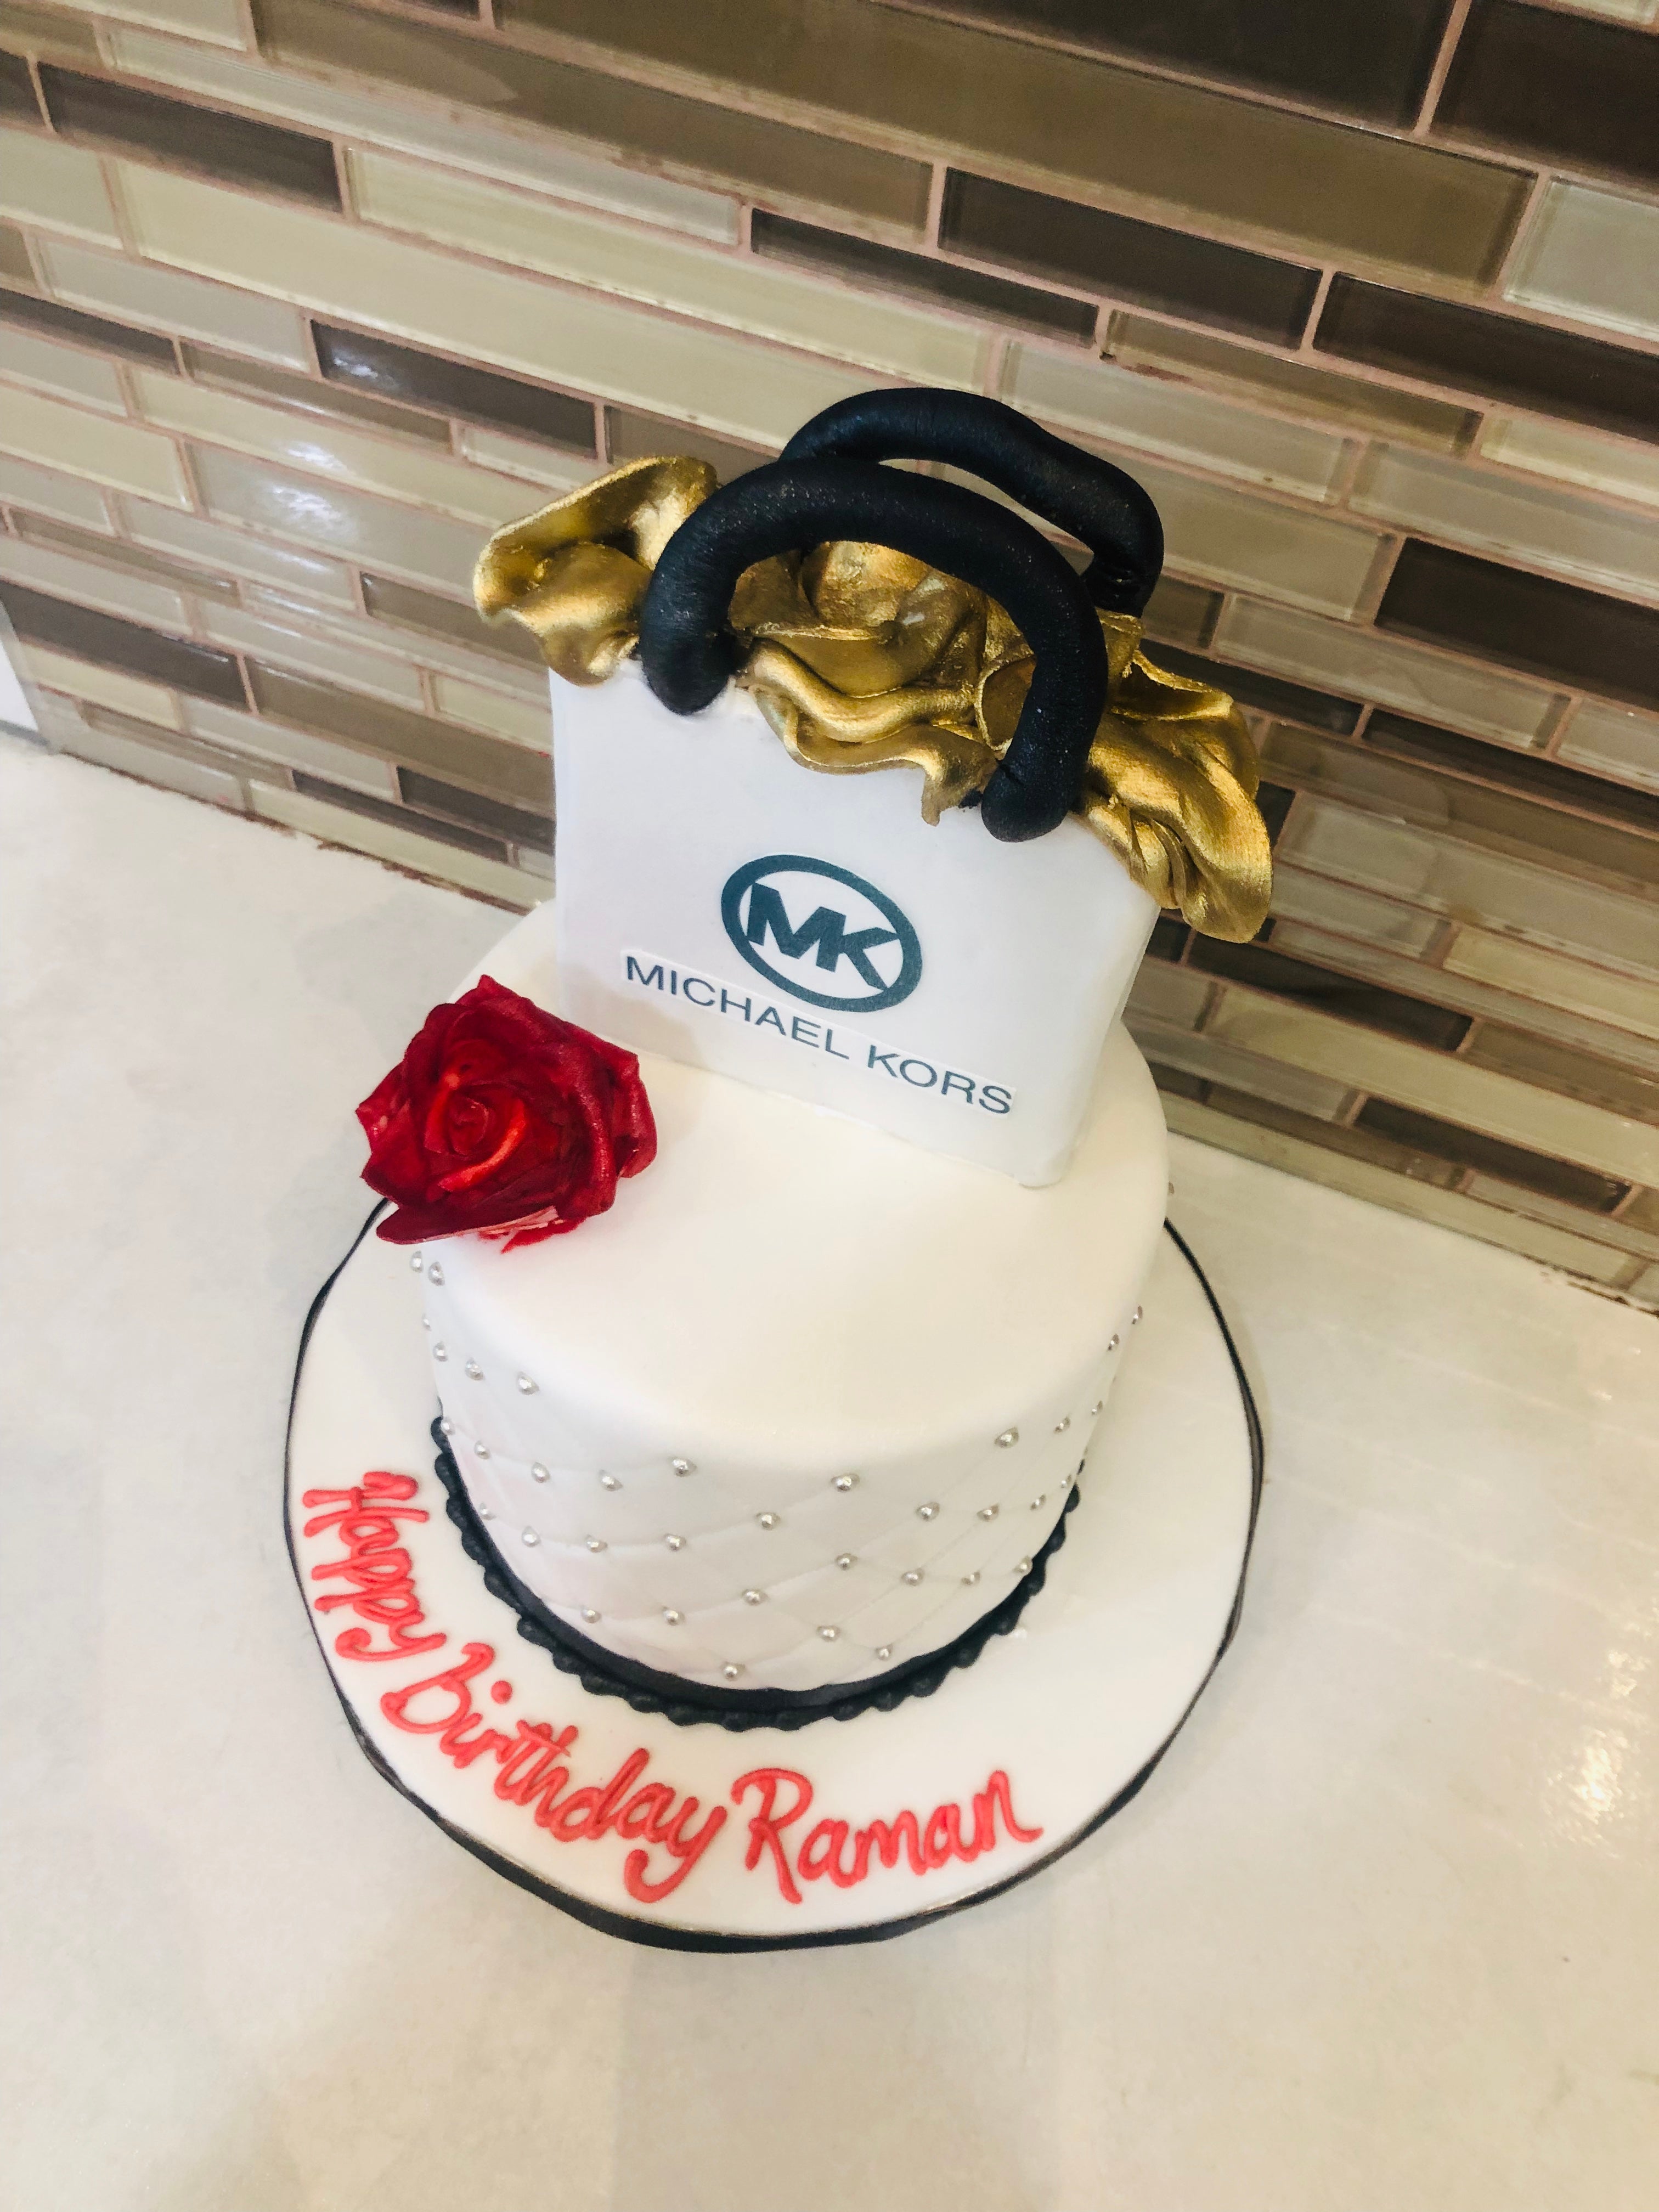 Michael Kors cake - Rashmi's Bakery